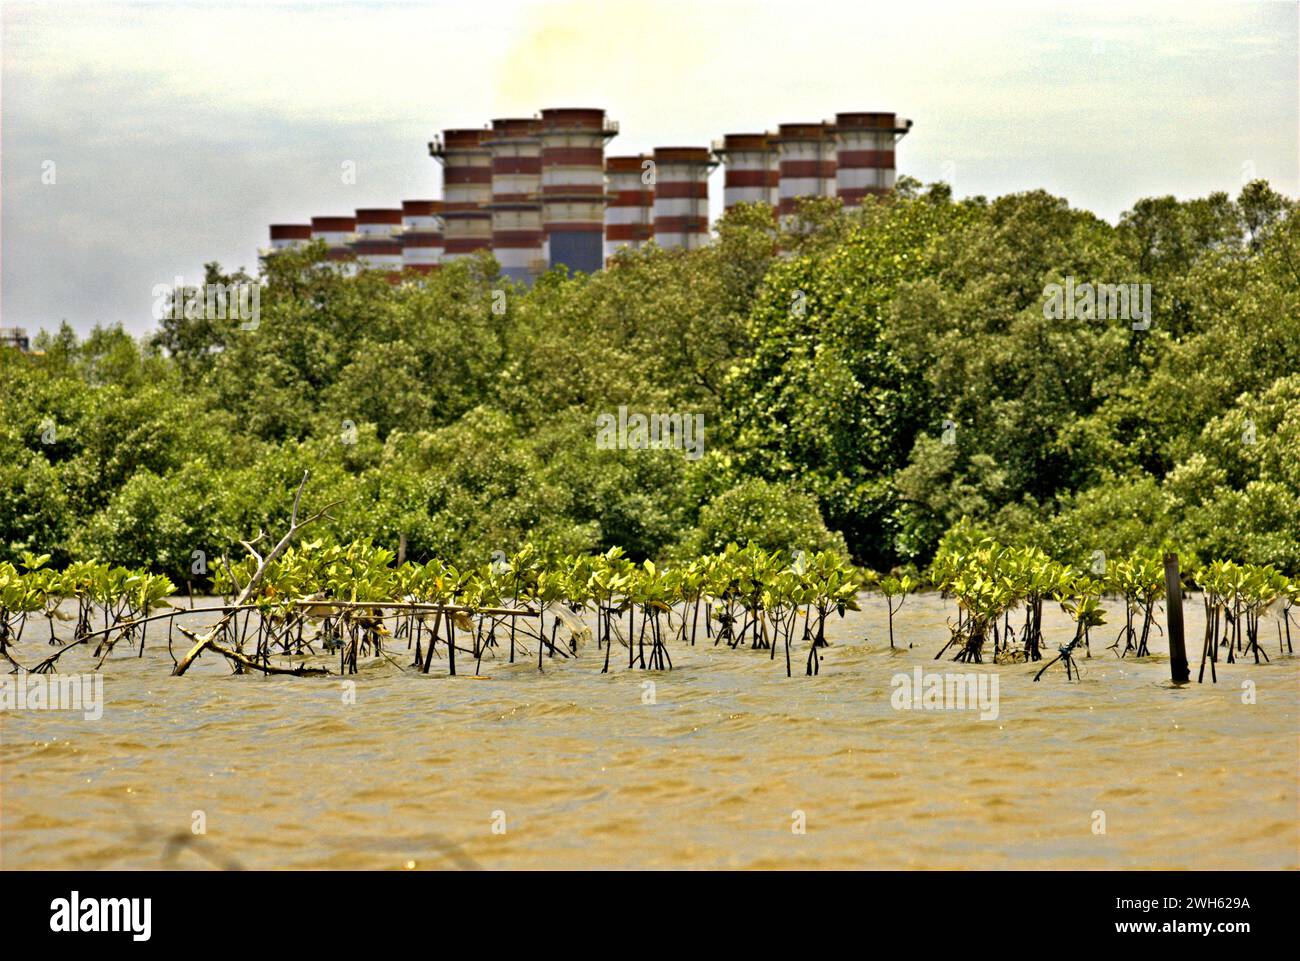 Vue d'une zone de réhabilitation de mangrove, dans un fond de forêt de mangrove et de la centrale électrique de Muara Tawar, est photographiée depuis les eaux côtières de la régence de Bekasi à Java Ouest, en Indonésie. Banque D'Images